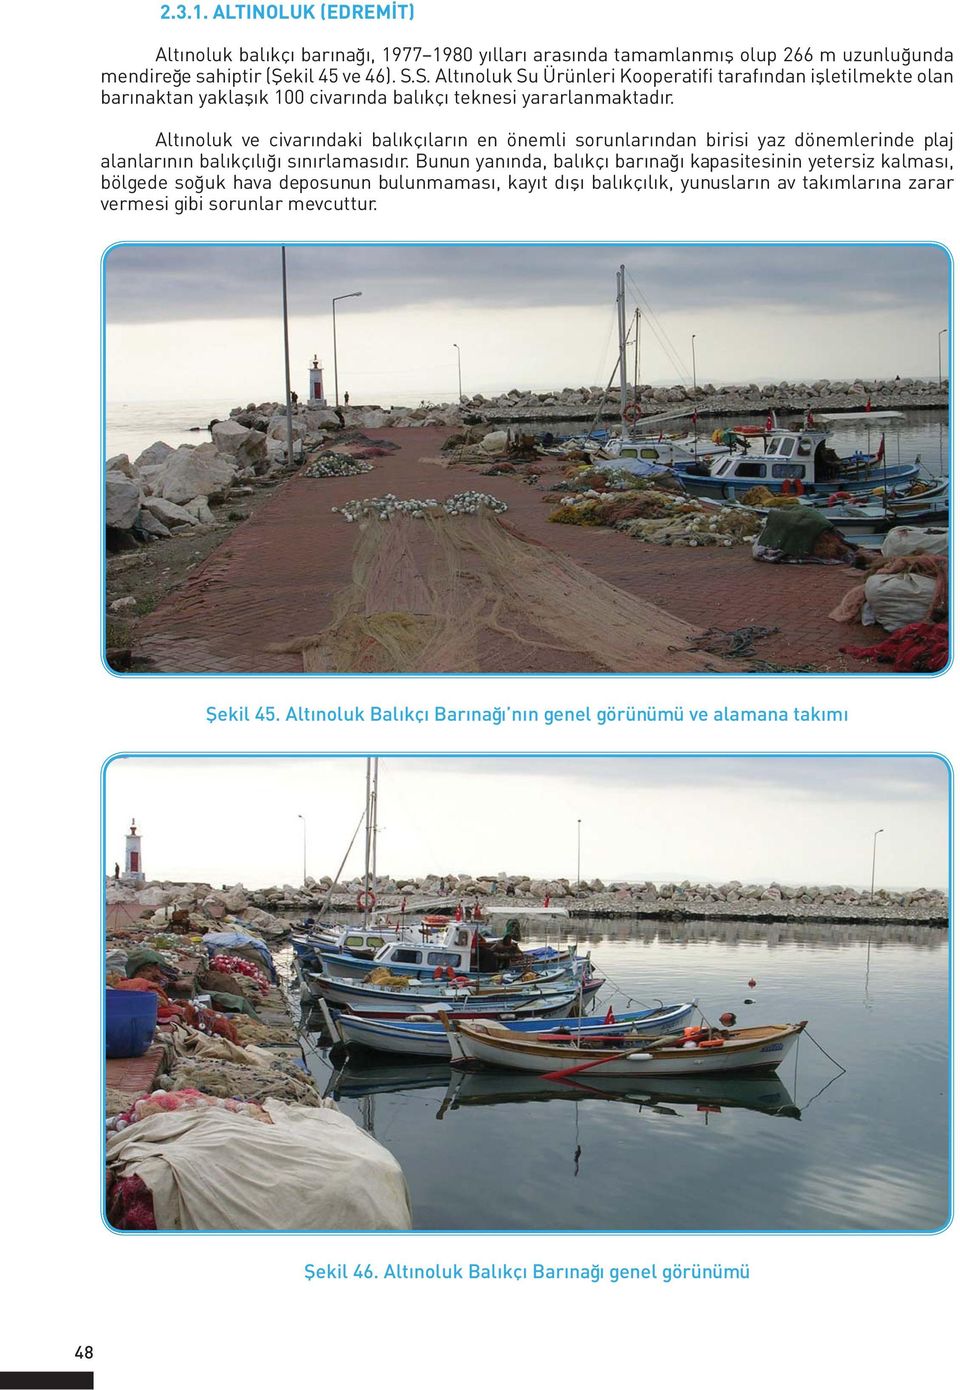 Altınoluk ve civarındaki balıkçıların en önemli sorunlarından birisi yaz dönemlerinde plaj alanlarının balıkçılığı sınırlamasıdır.